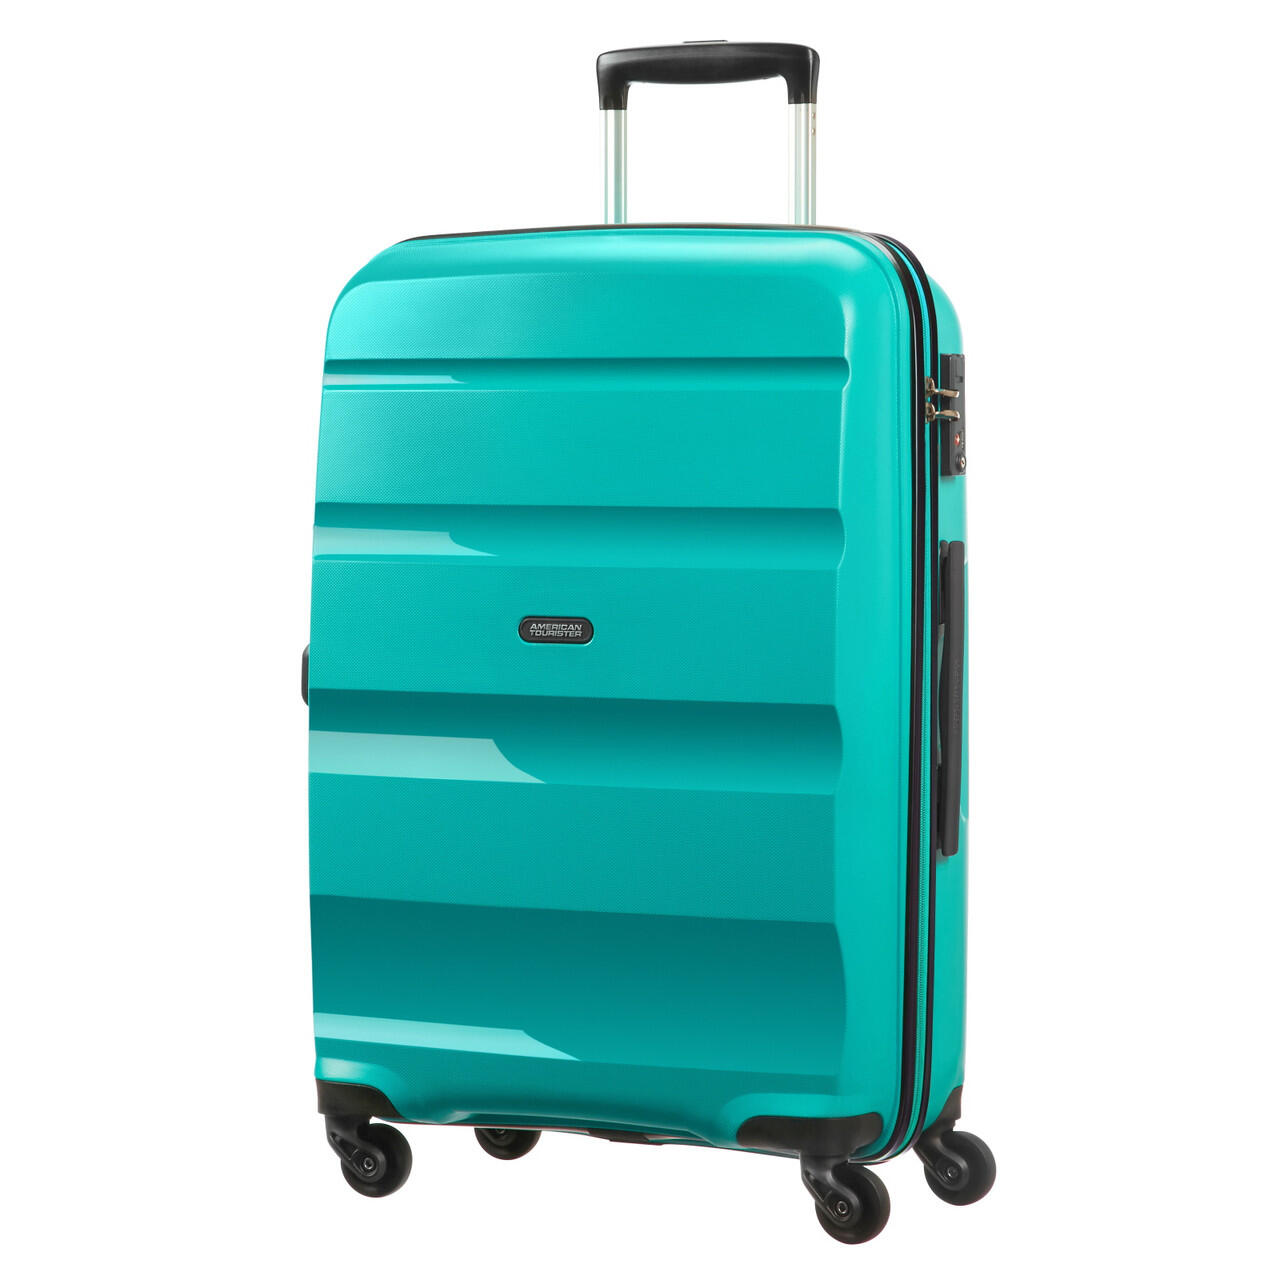 Bon Air 4 Wheel Medium Suitcase - 66cm - Turquoise 2/7